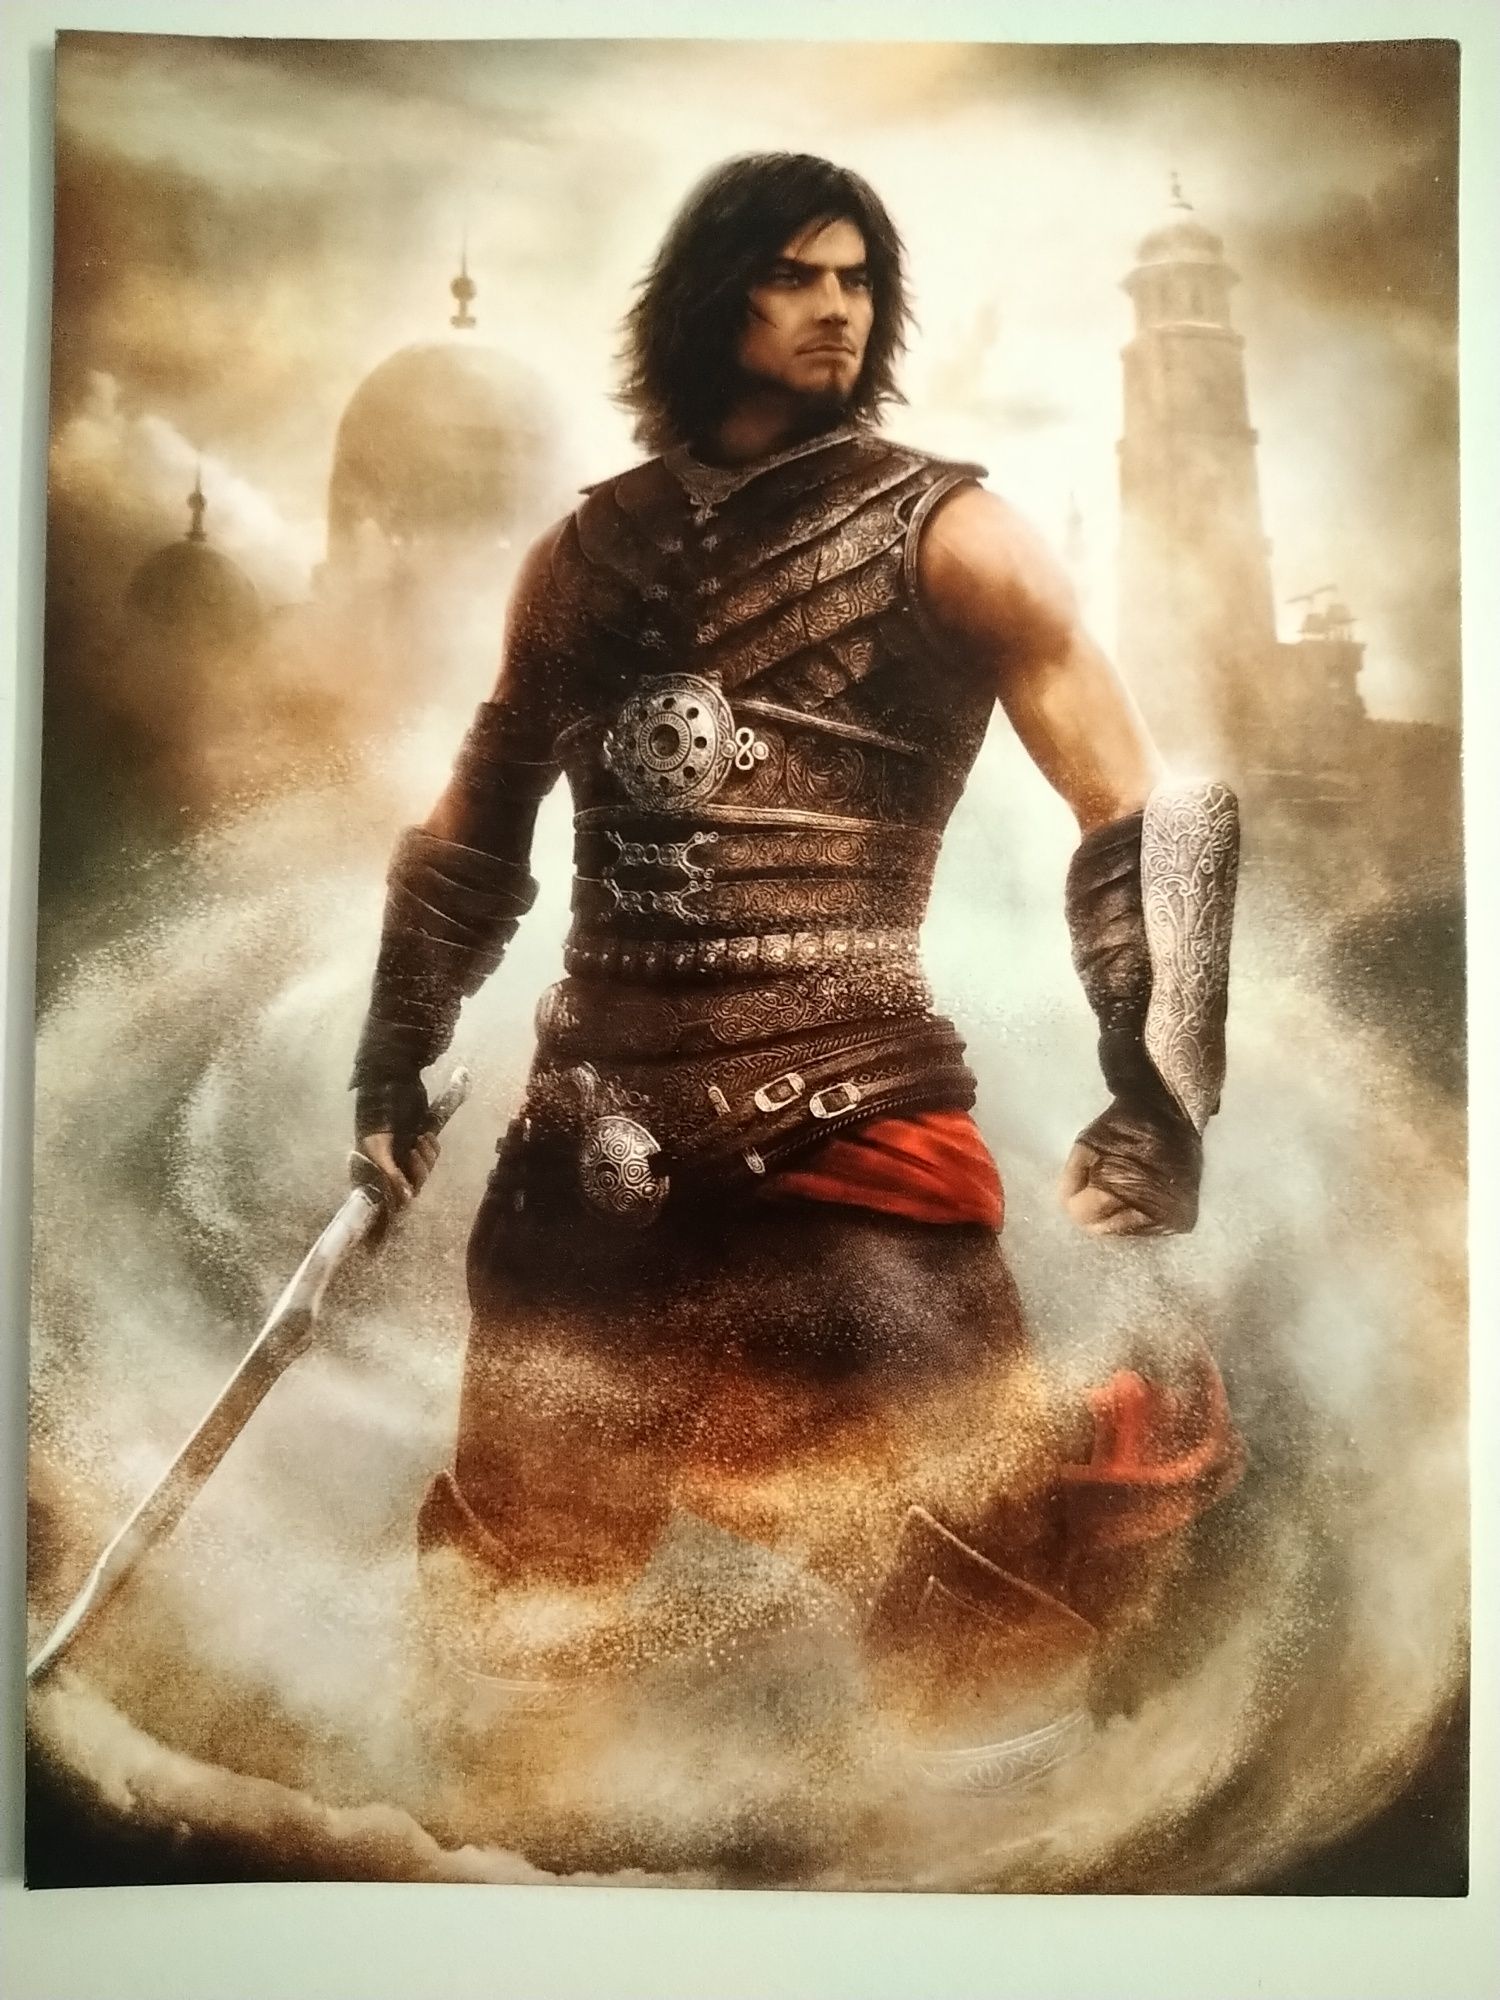 Prince of Persia. Забуті Піски. Колекціоні листівки (Акела, 2010р.)